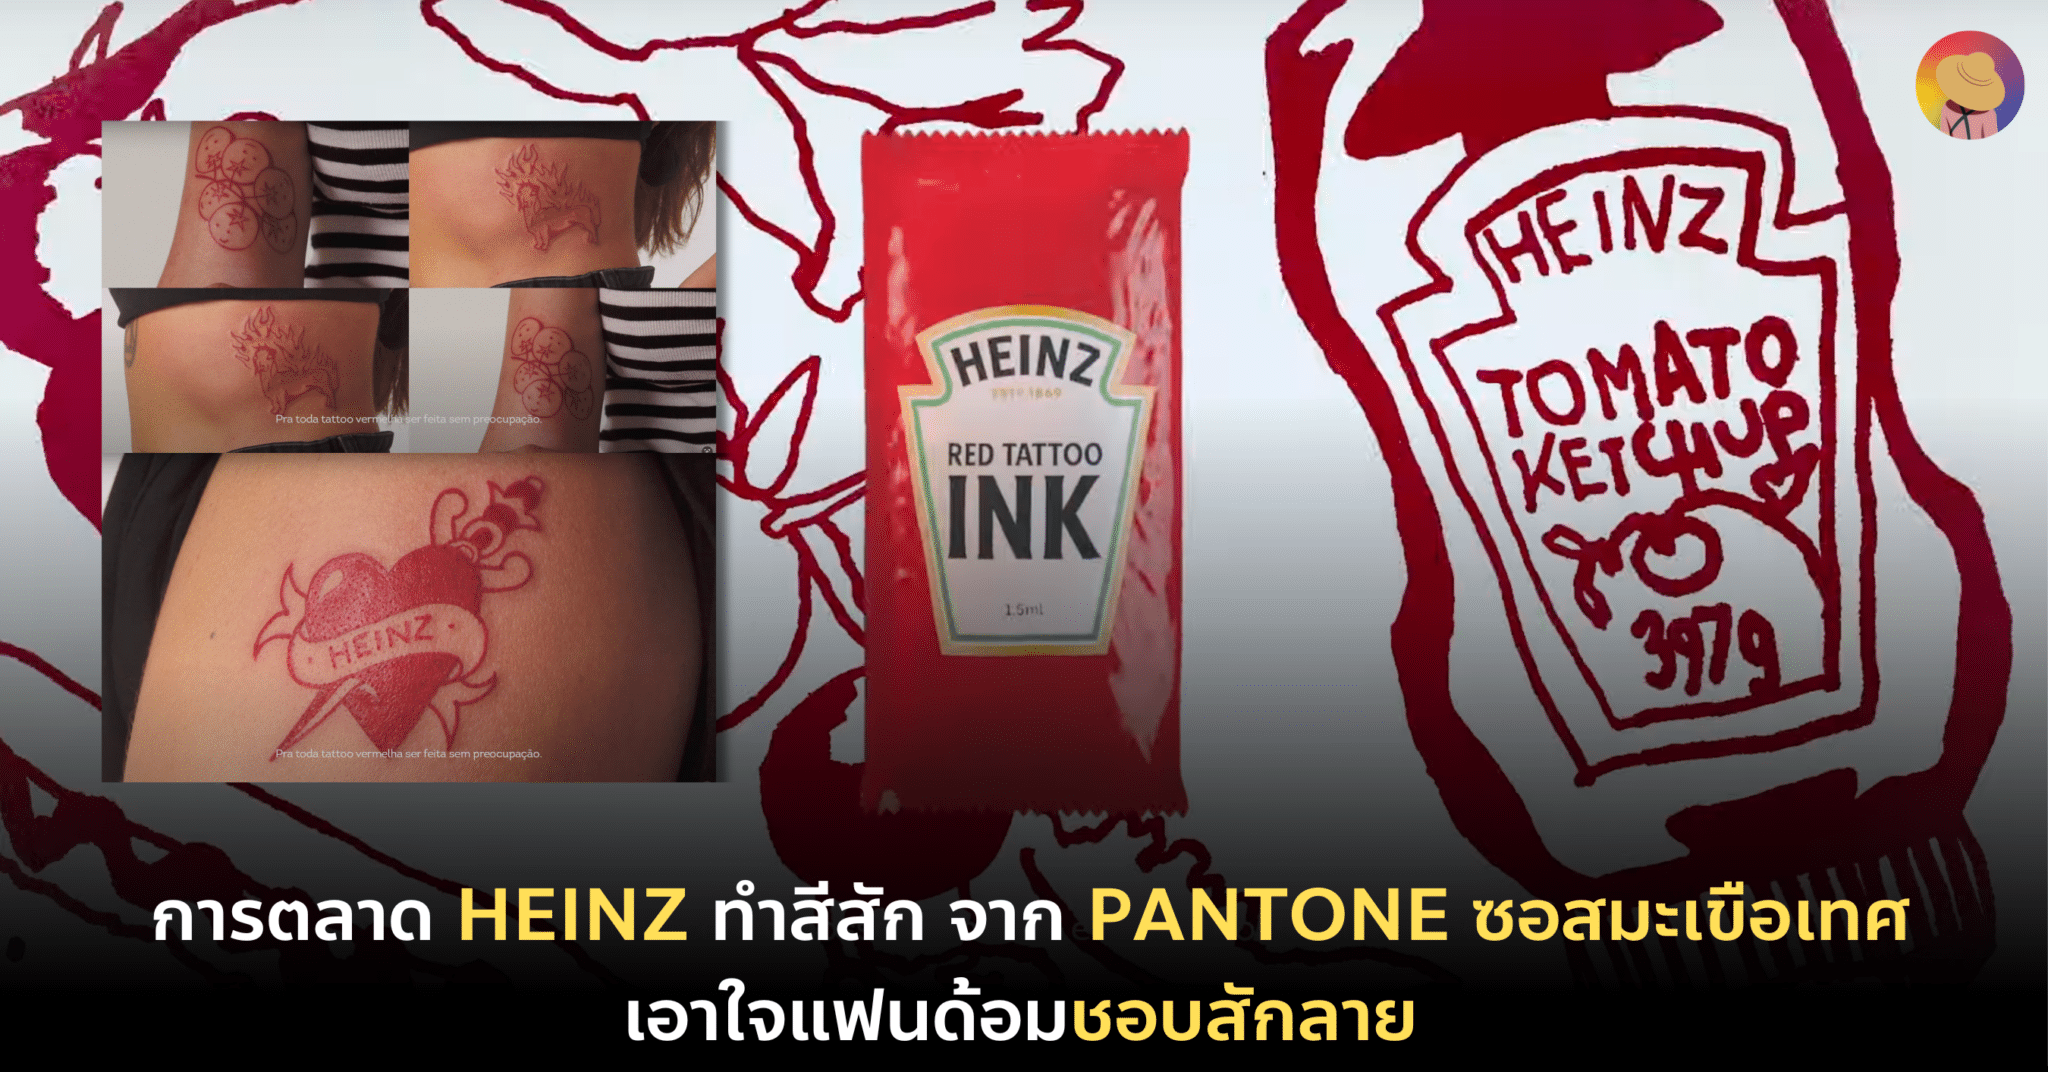 การตลาด Heinz ทำสีสัก จาก Pantone ซอสมะเขือเทศ